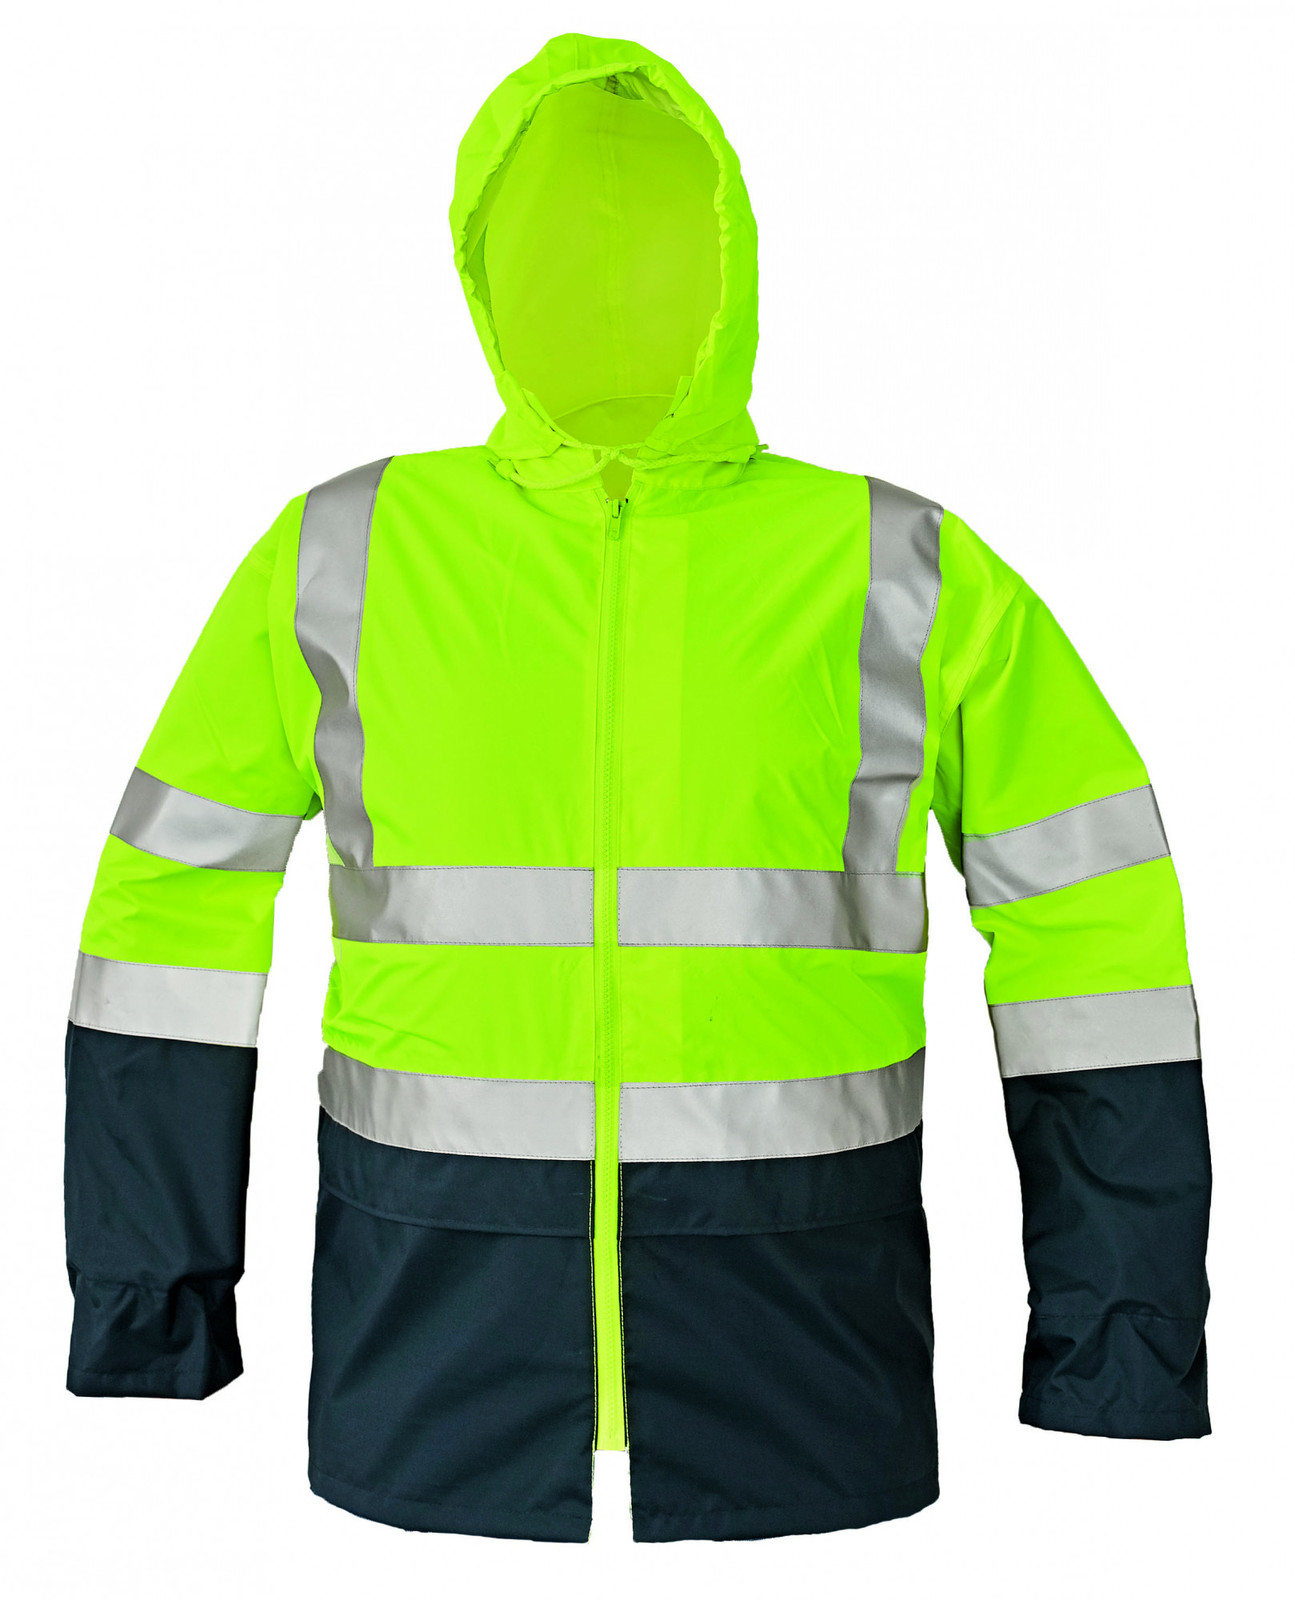 Reflexná pracovná bunda Epping - veľkosť: M, farba: žltá/navy